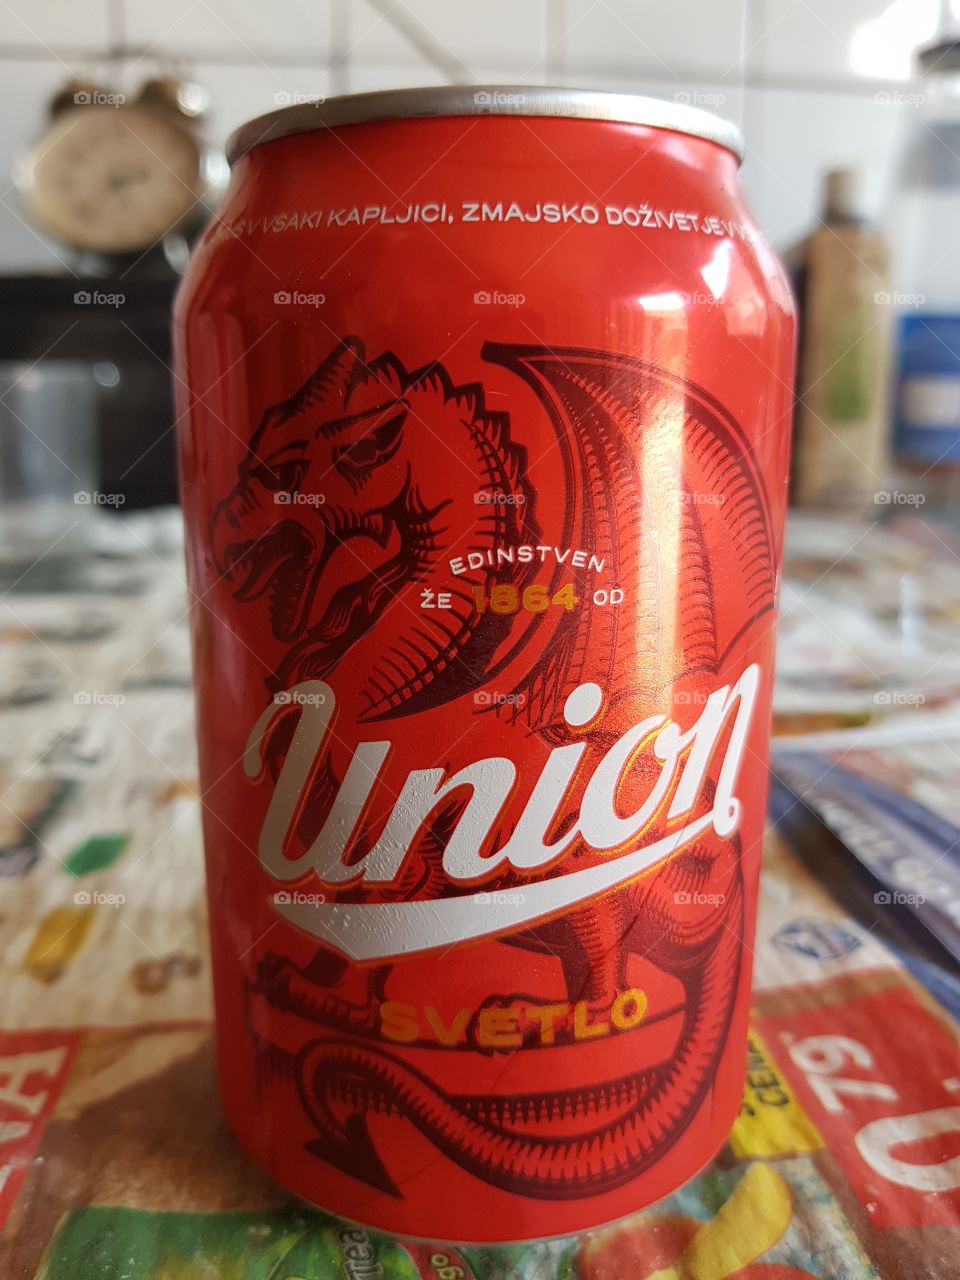 tasty Union beer